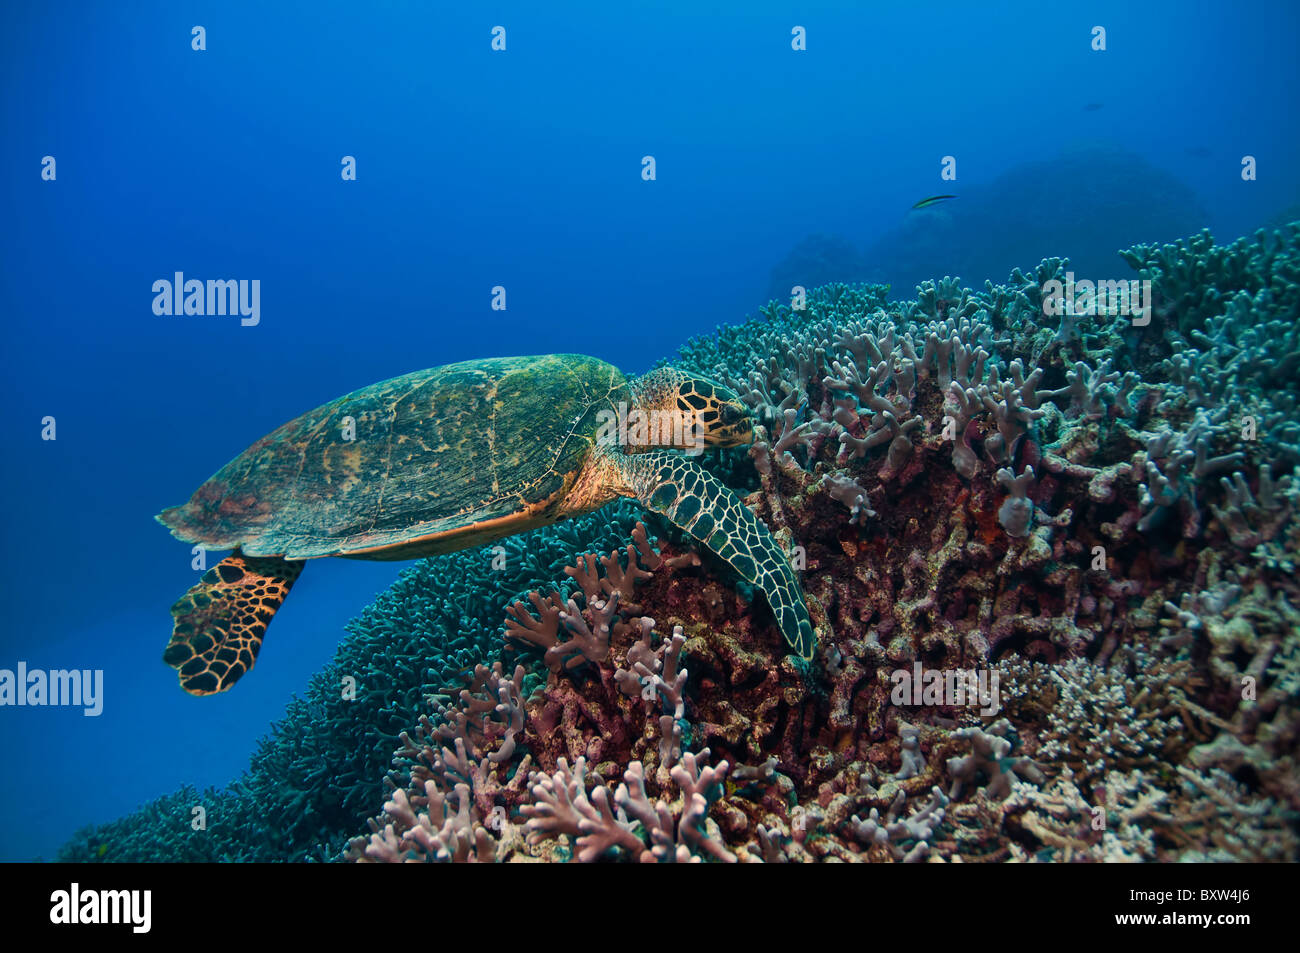 La tortuga verde de la gran barrera de coral de Australia Foto de stock